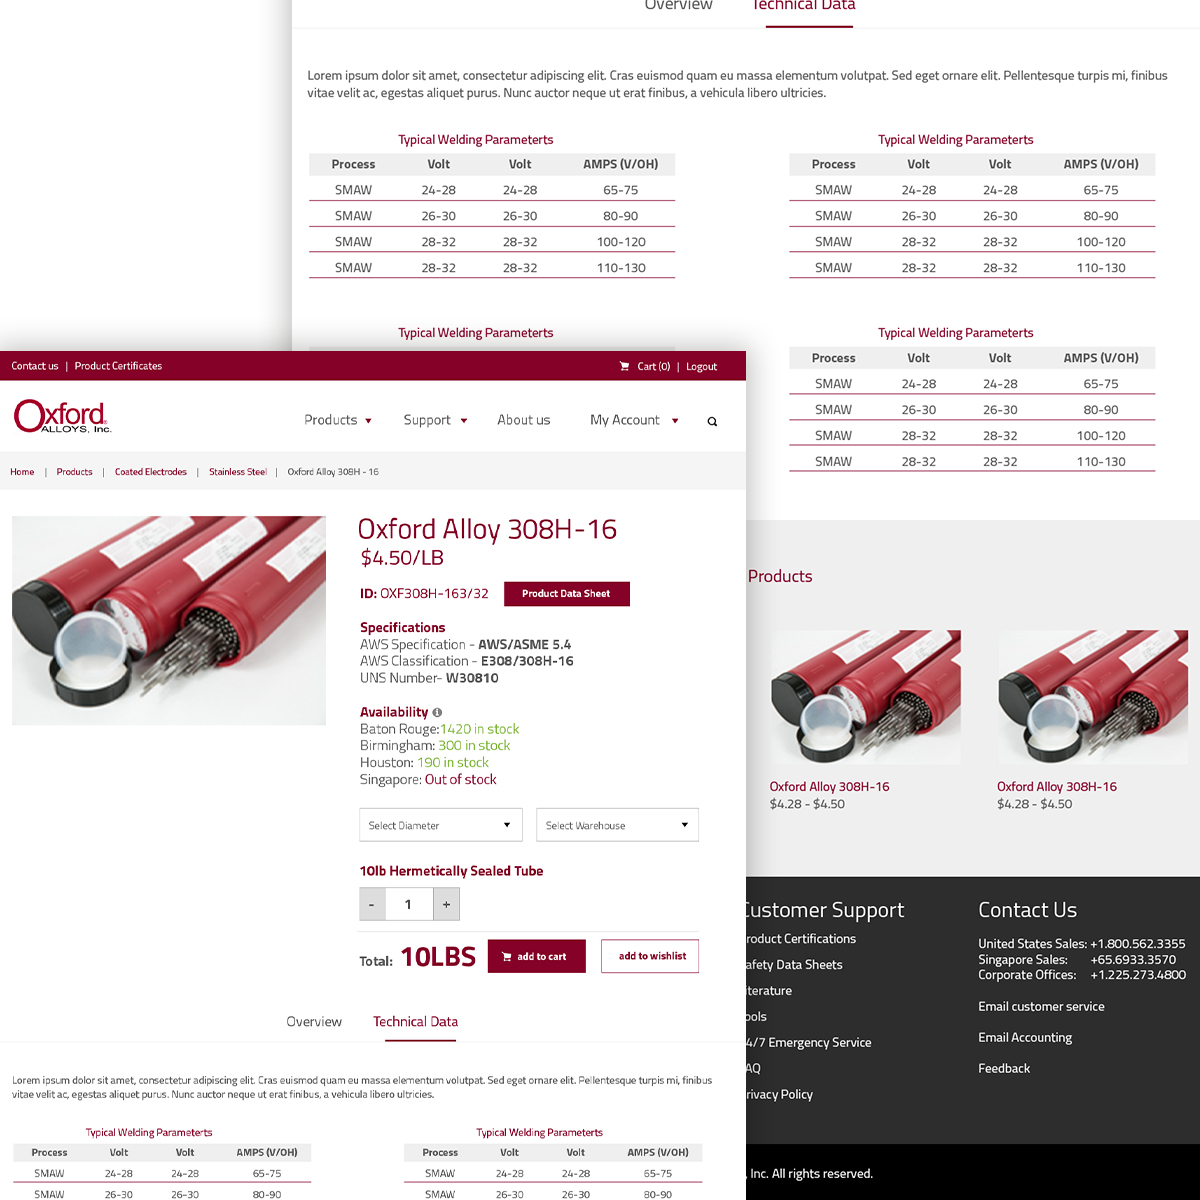 Website Design for Oxford